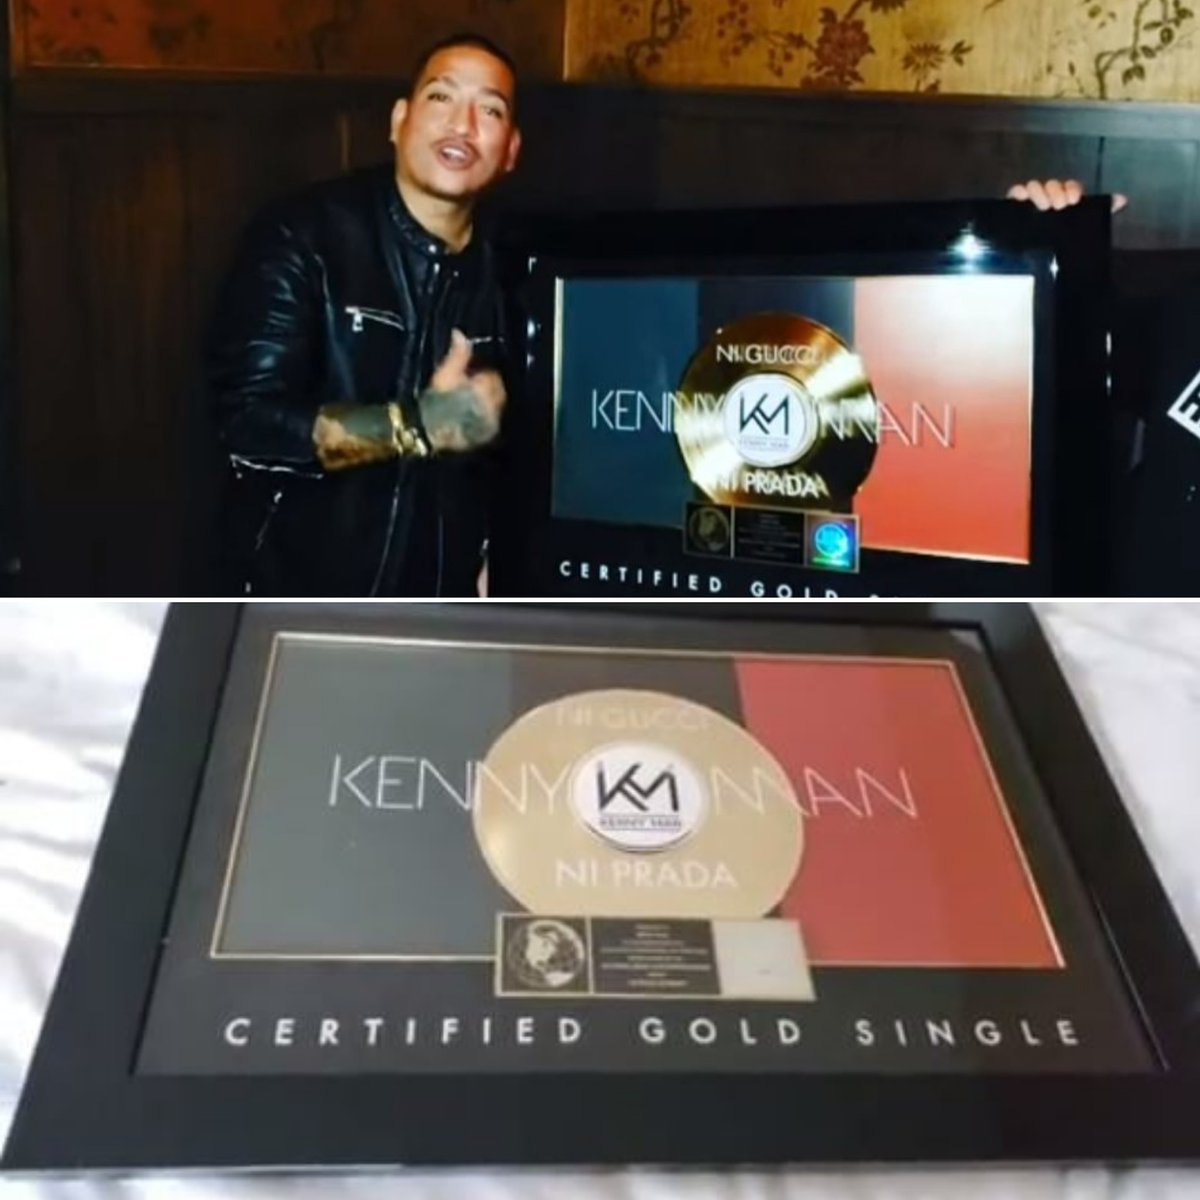 Kenny Man recibe otro Disco de Oro por su éxito "Ni Gucci Ni Prada"